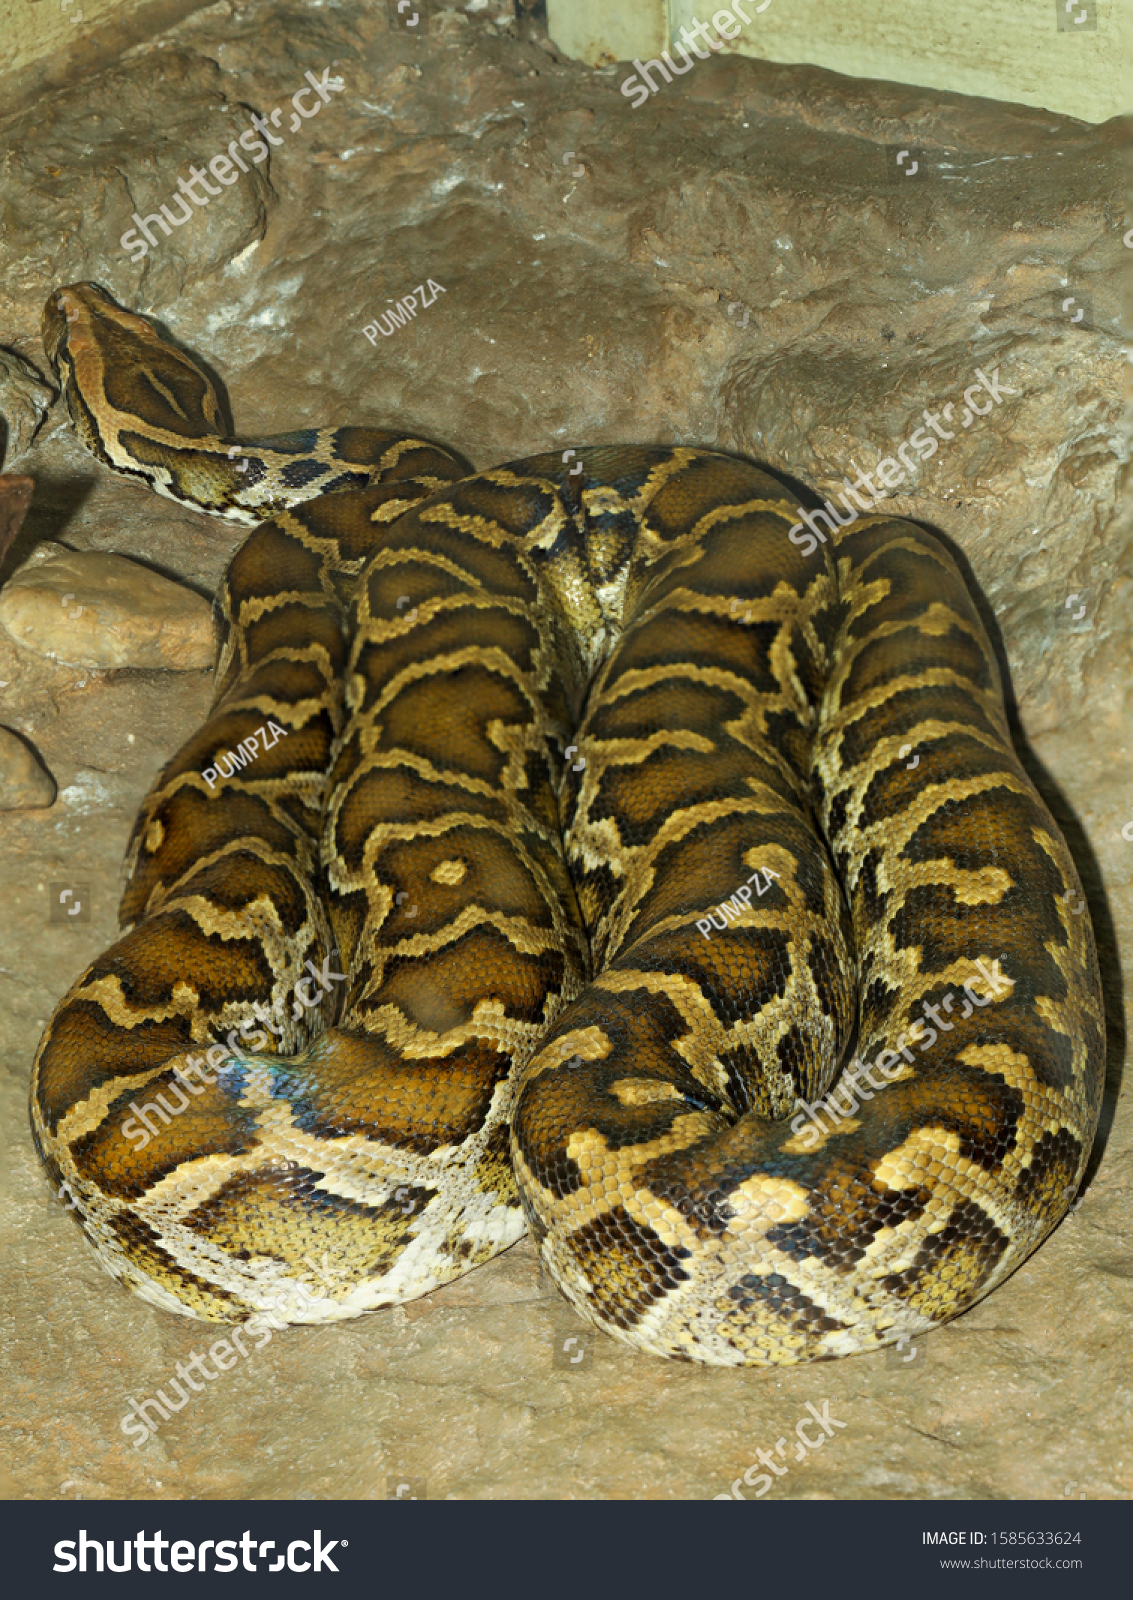 body python